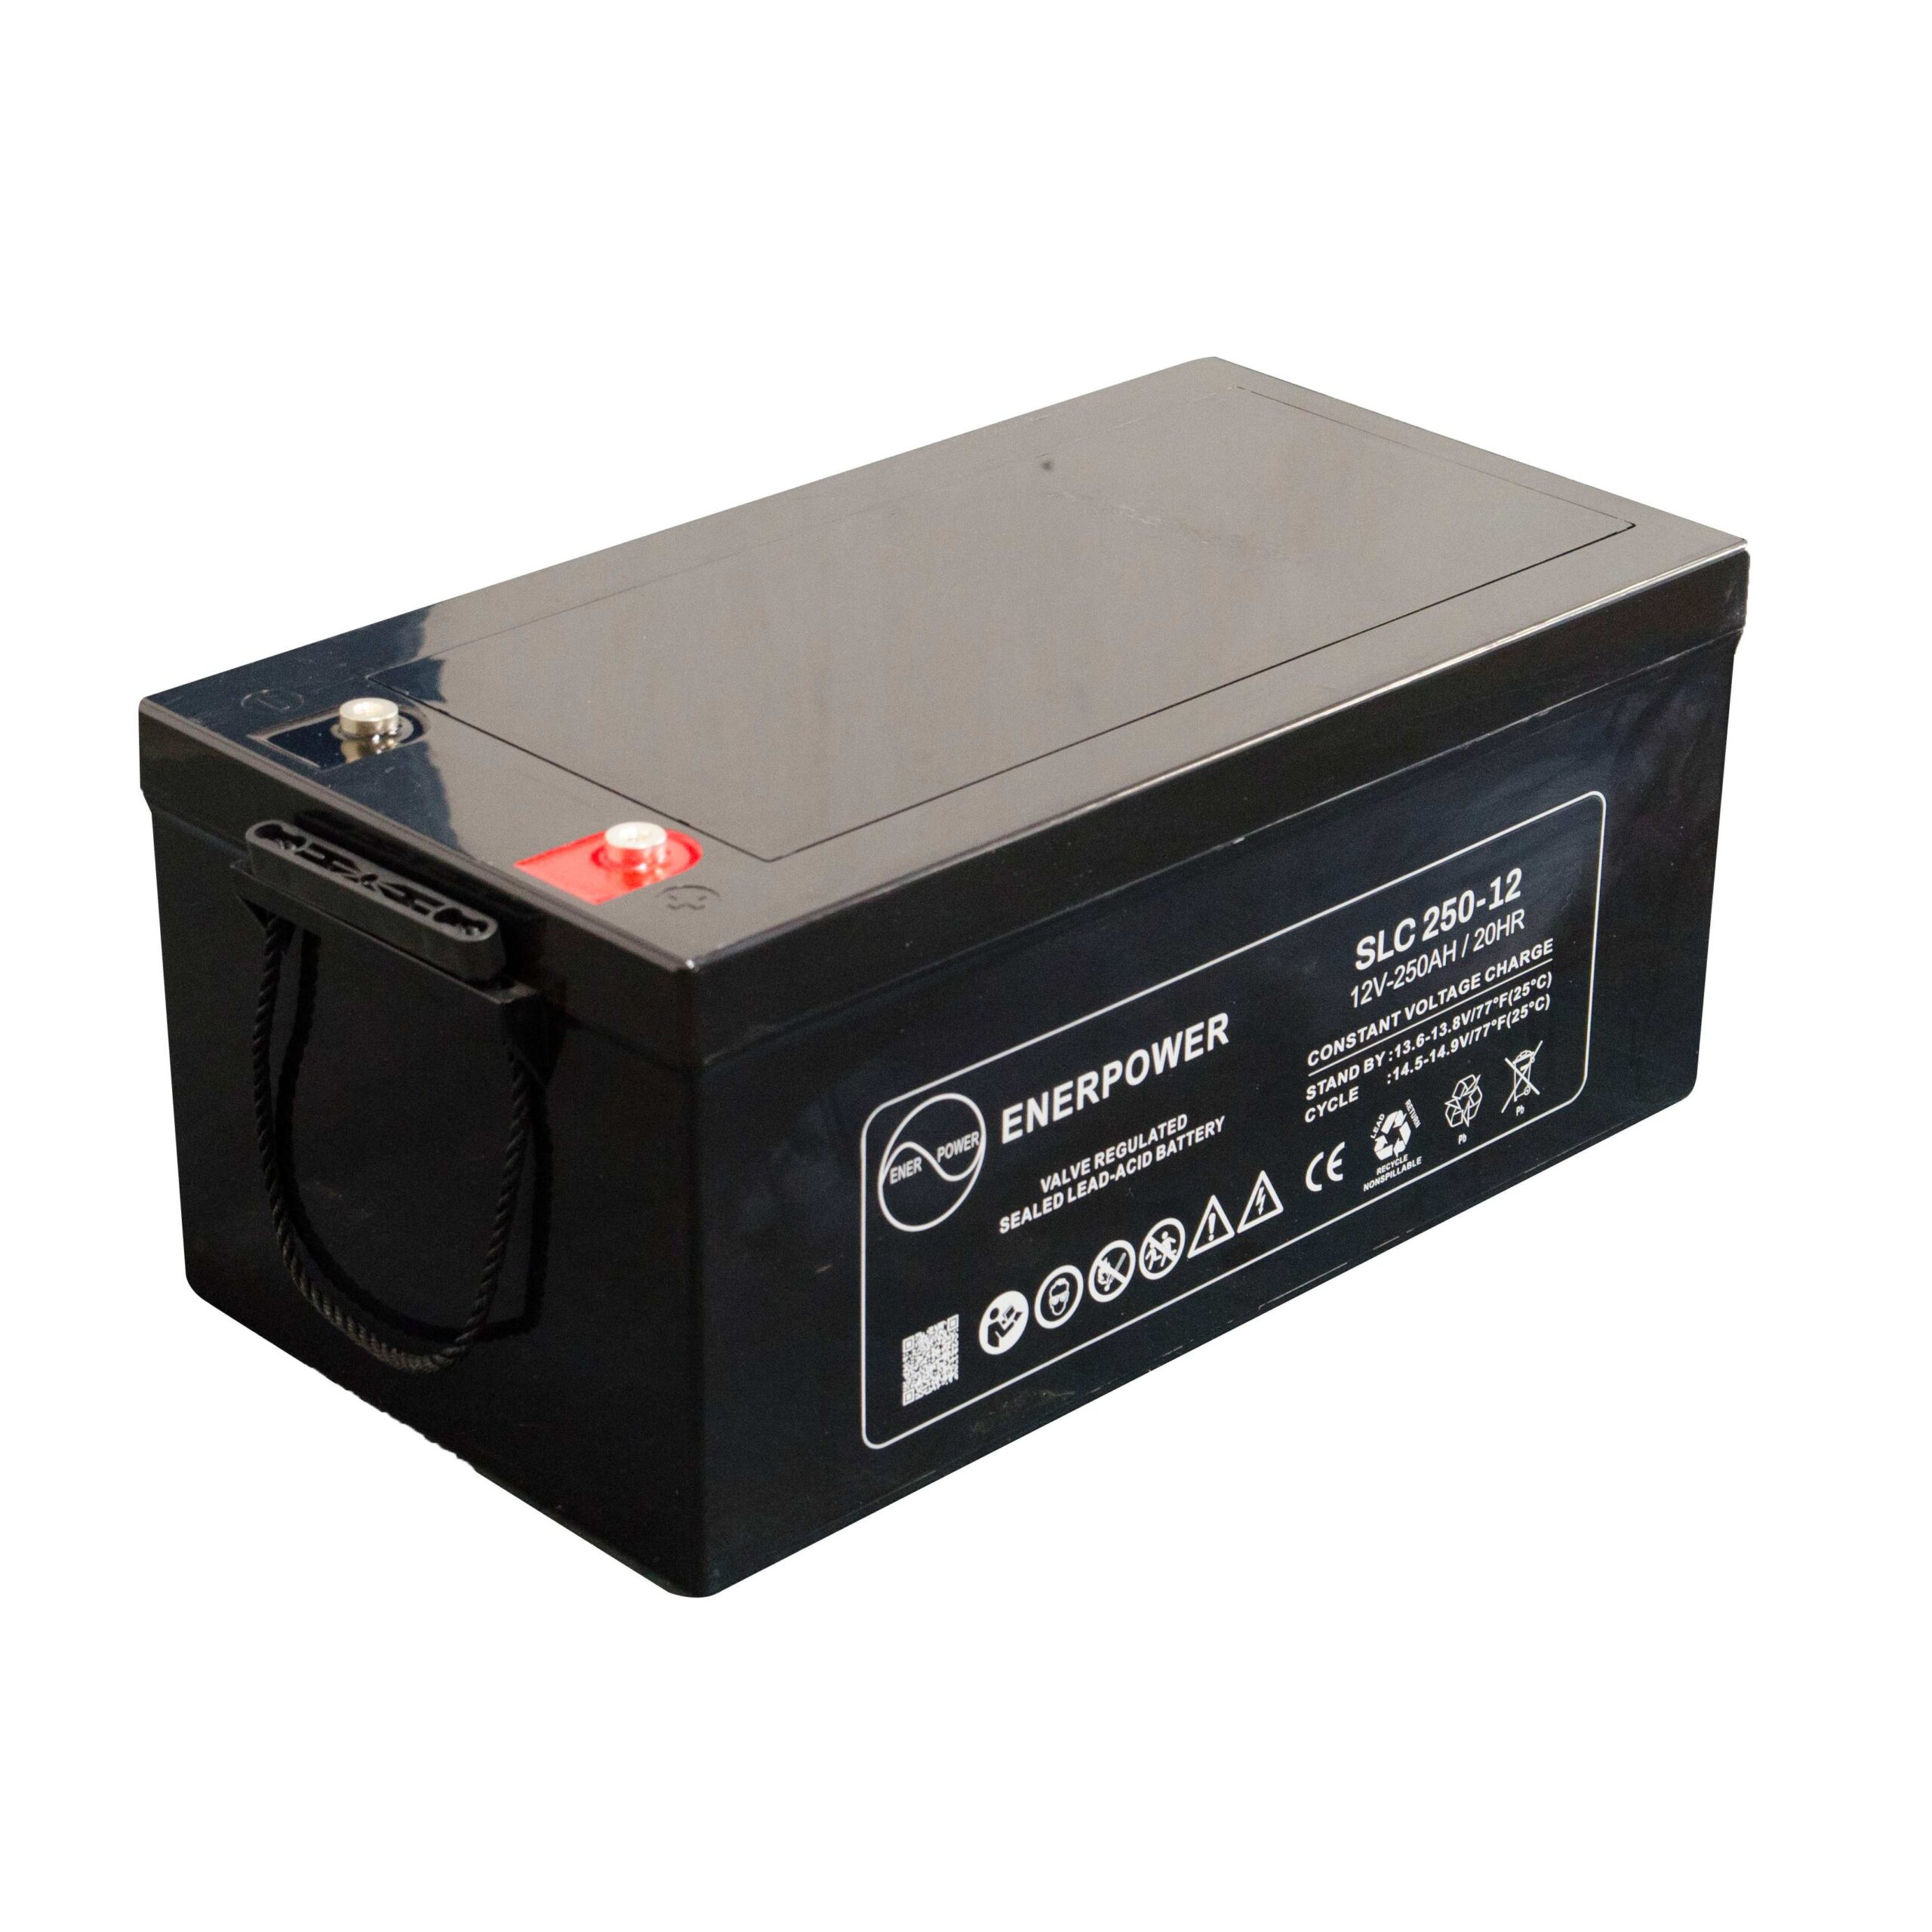 SLC 250-12 12V 250Ah AGM ENERPOWER Batterie